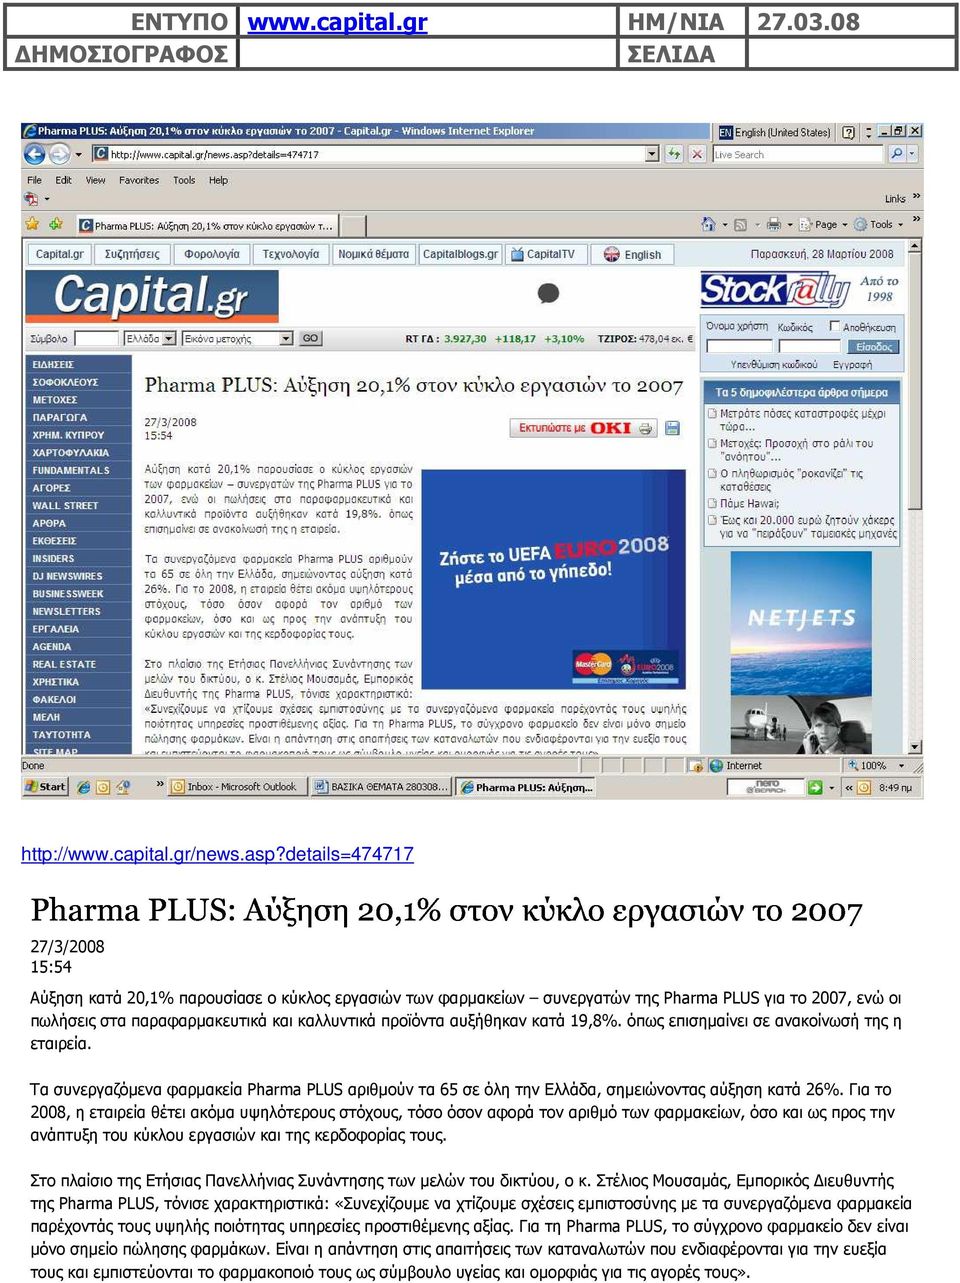 αυξήθηκαν κατά 19,8%. όπως επισηµαίνει σε ανακοίνωσή της η εταιρεία. Τα συνεργαζόµενα φαρµακεία Pharma PLUS αριθµούν τα 65 σε όλη την Ελλάδα, σηµειώνοντας αύξηση κατά 26%.